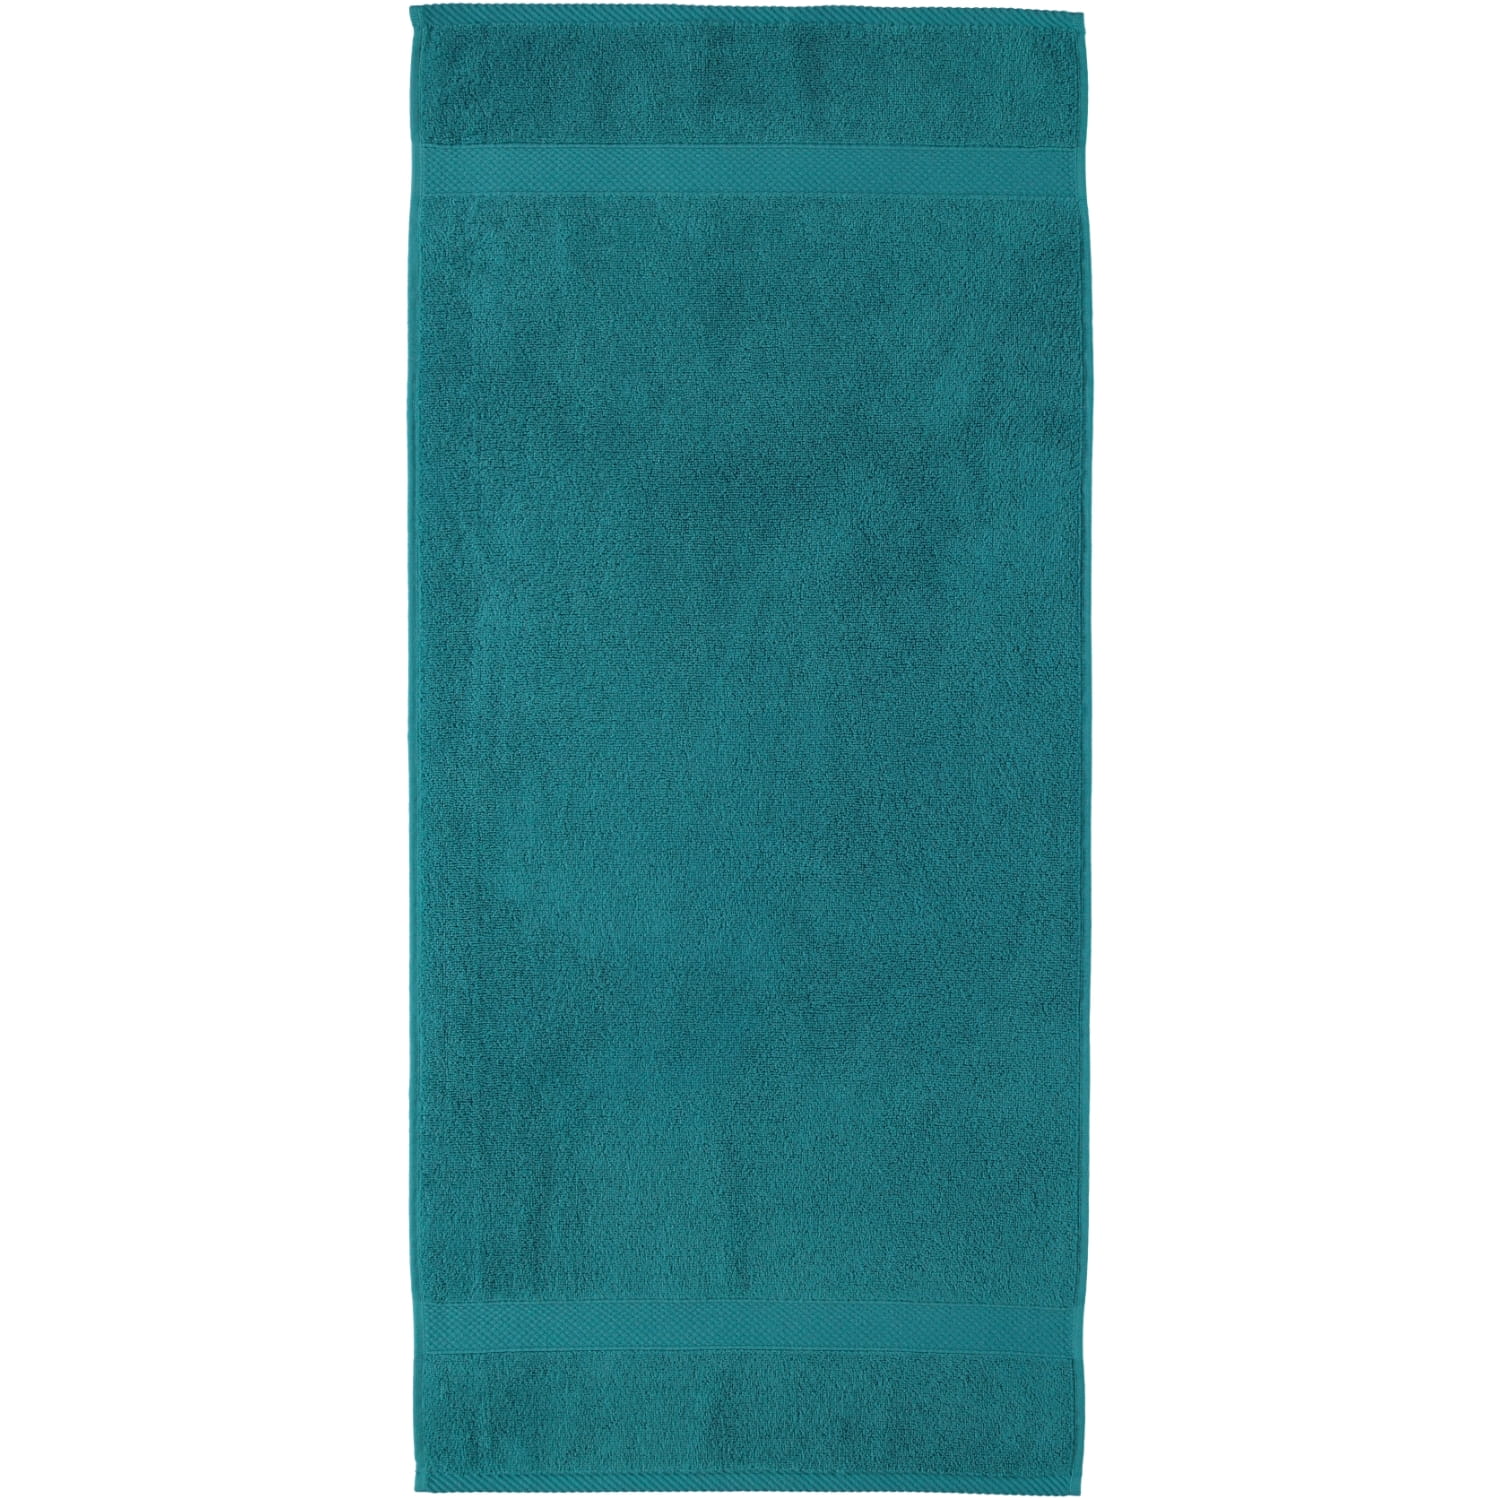 Egeria Diamant - Marken | (02010450) | Egeria - turquoise Handtücher | Farbe: dark Egeria 464